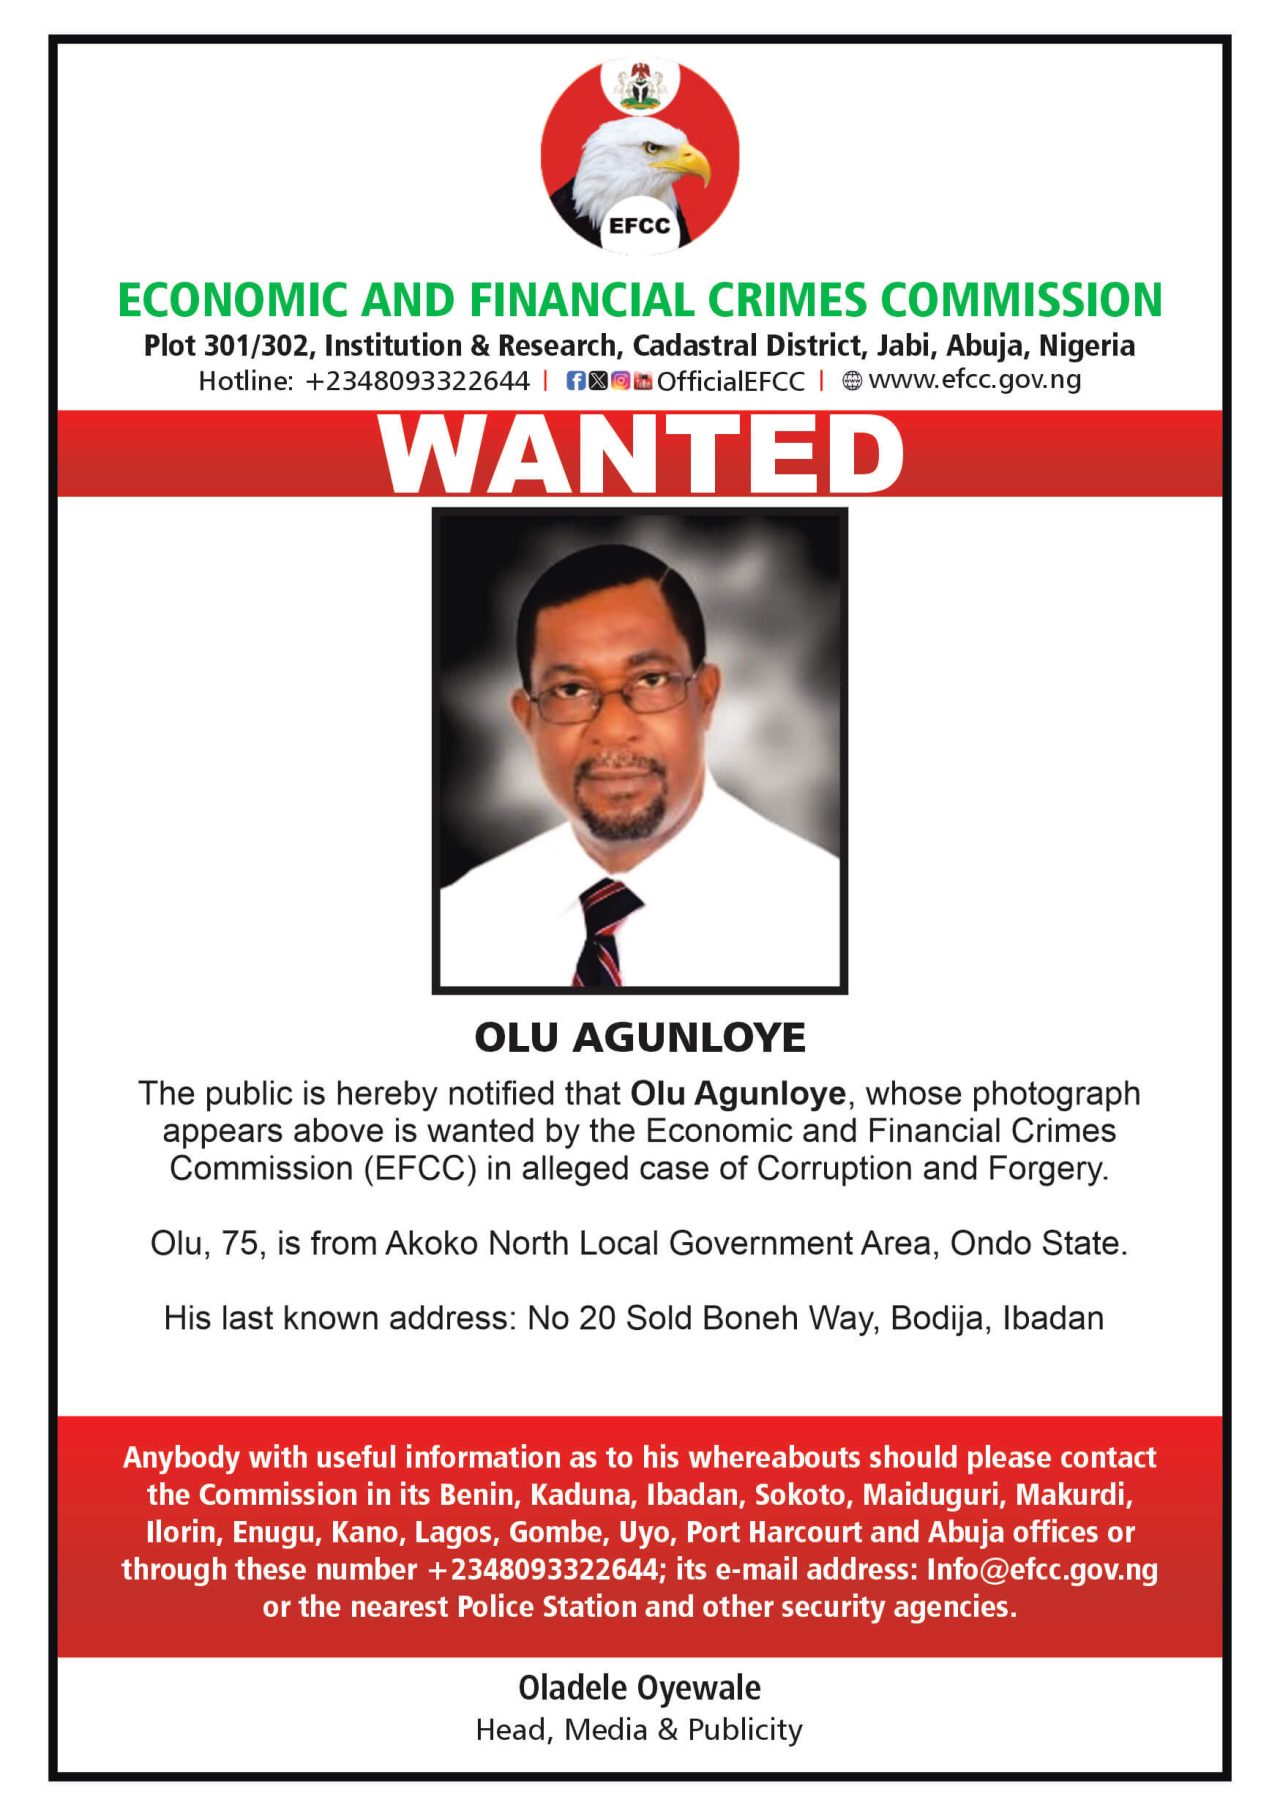 EFCC declares Olu Agunloye wanted